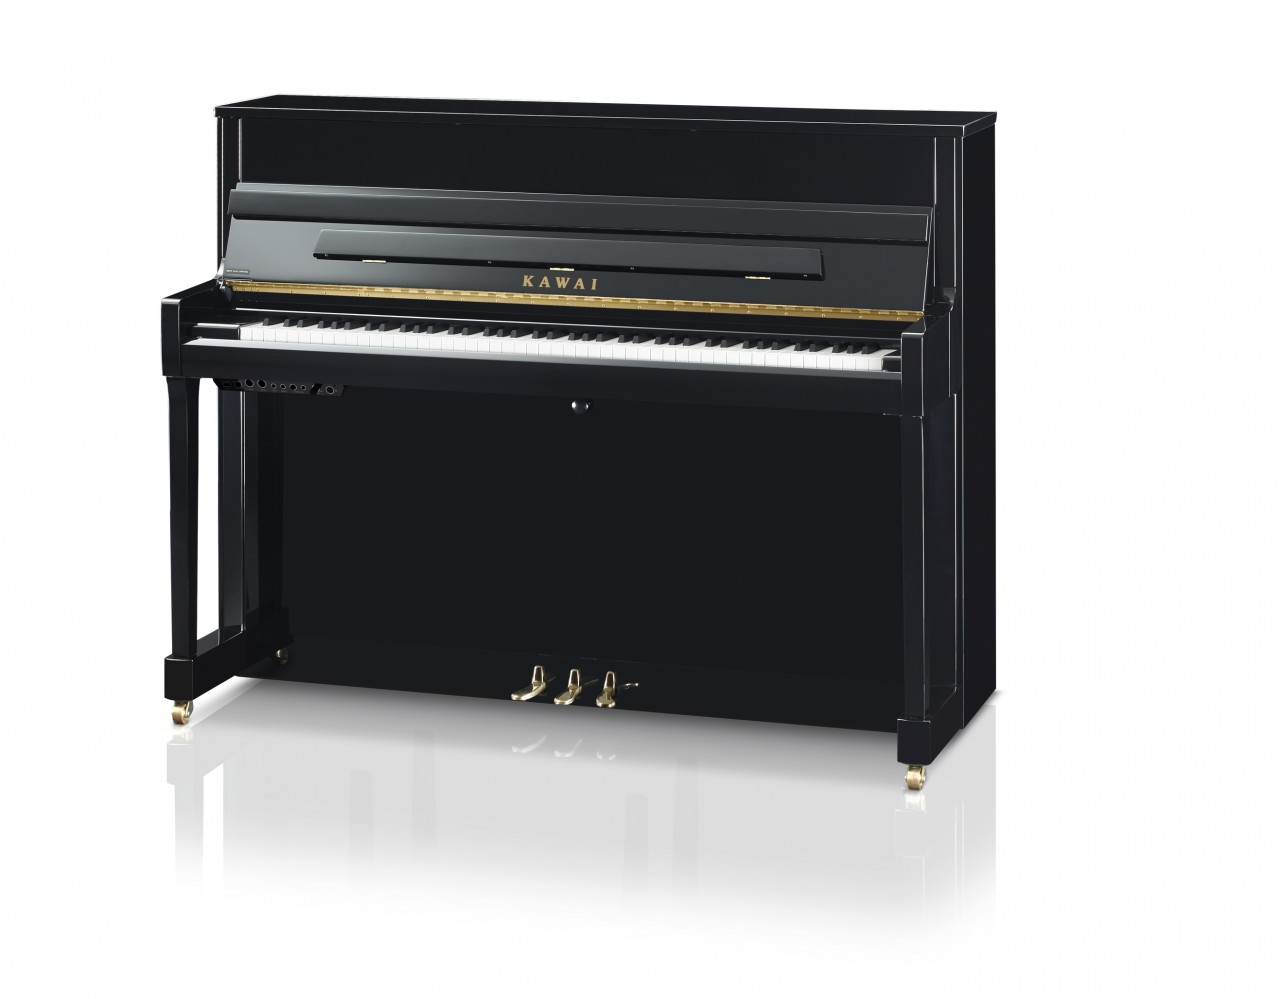 Kawai Klavier K 200 E/P ATX 4